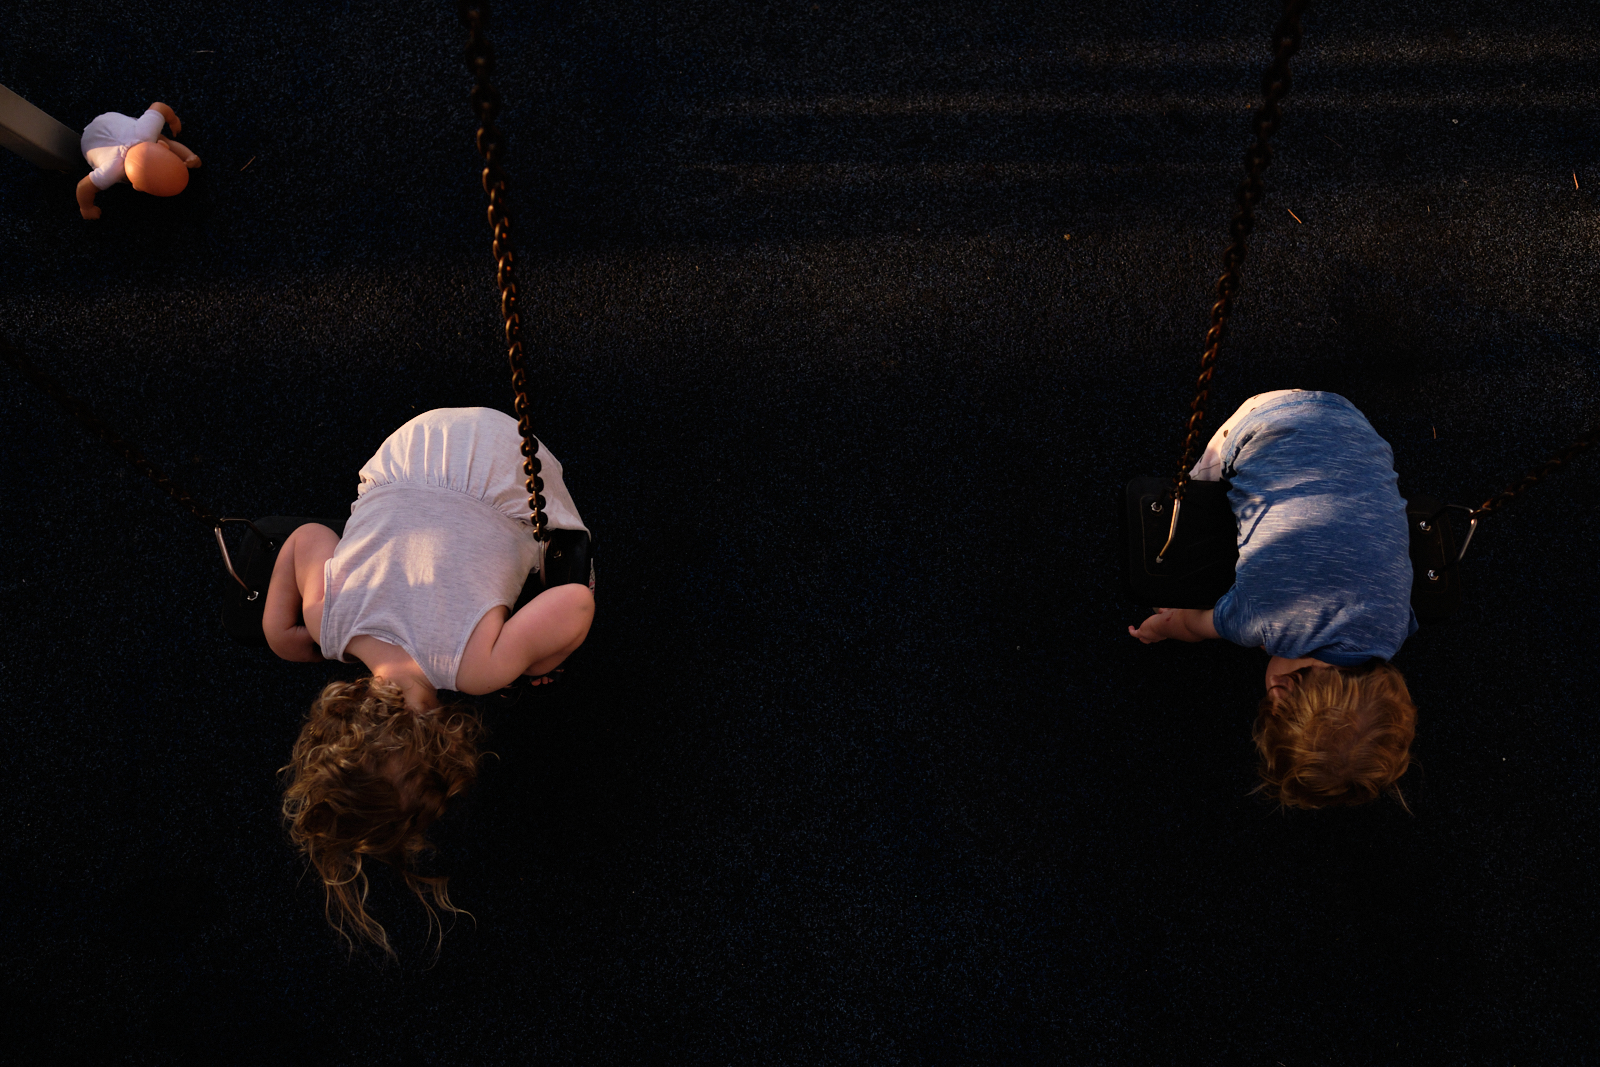 צילום של שני ילדים תלויים על נדנדות עם בובה ליד בתנוחה דומה